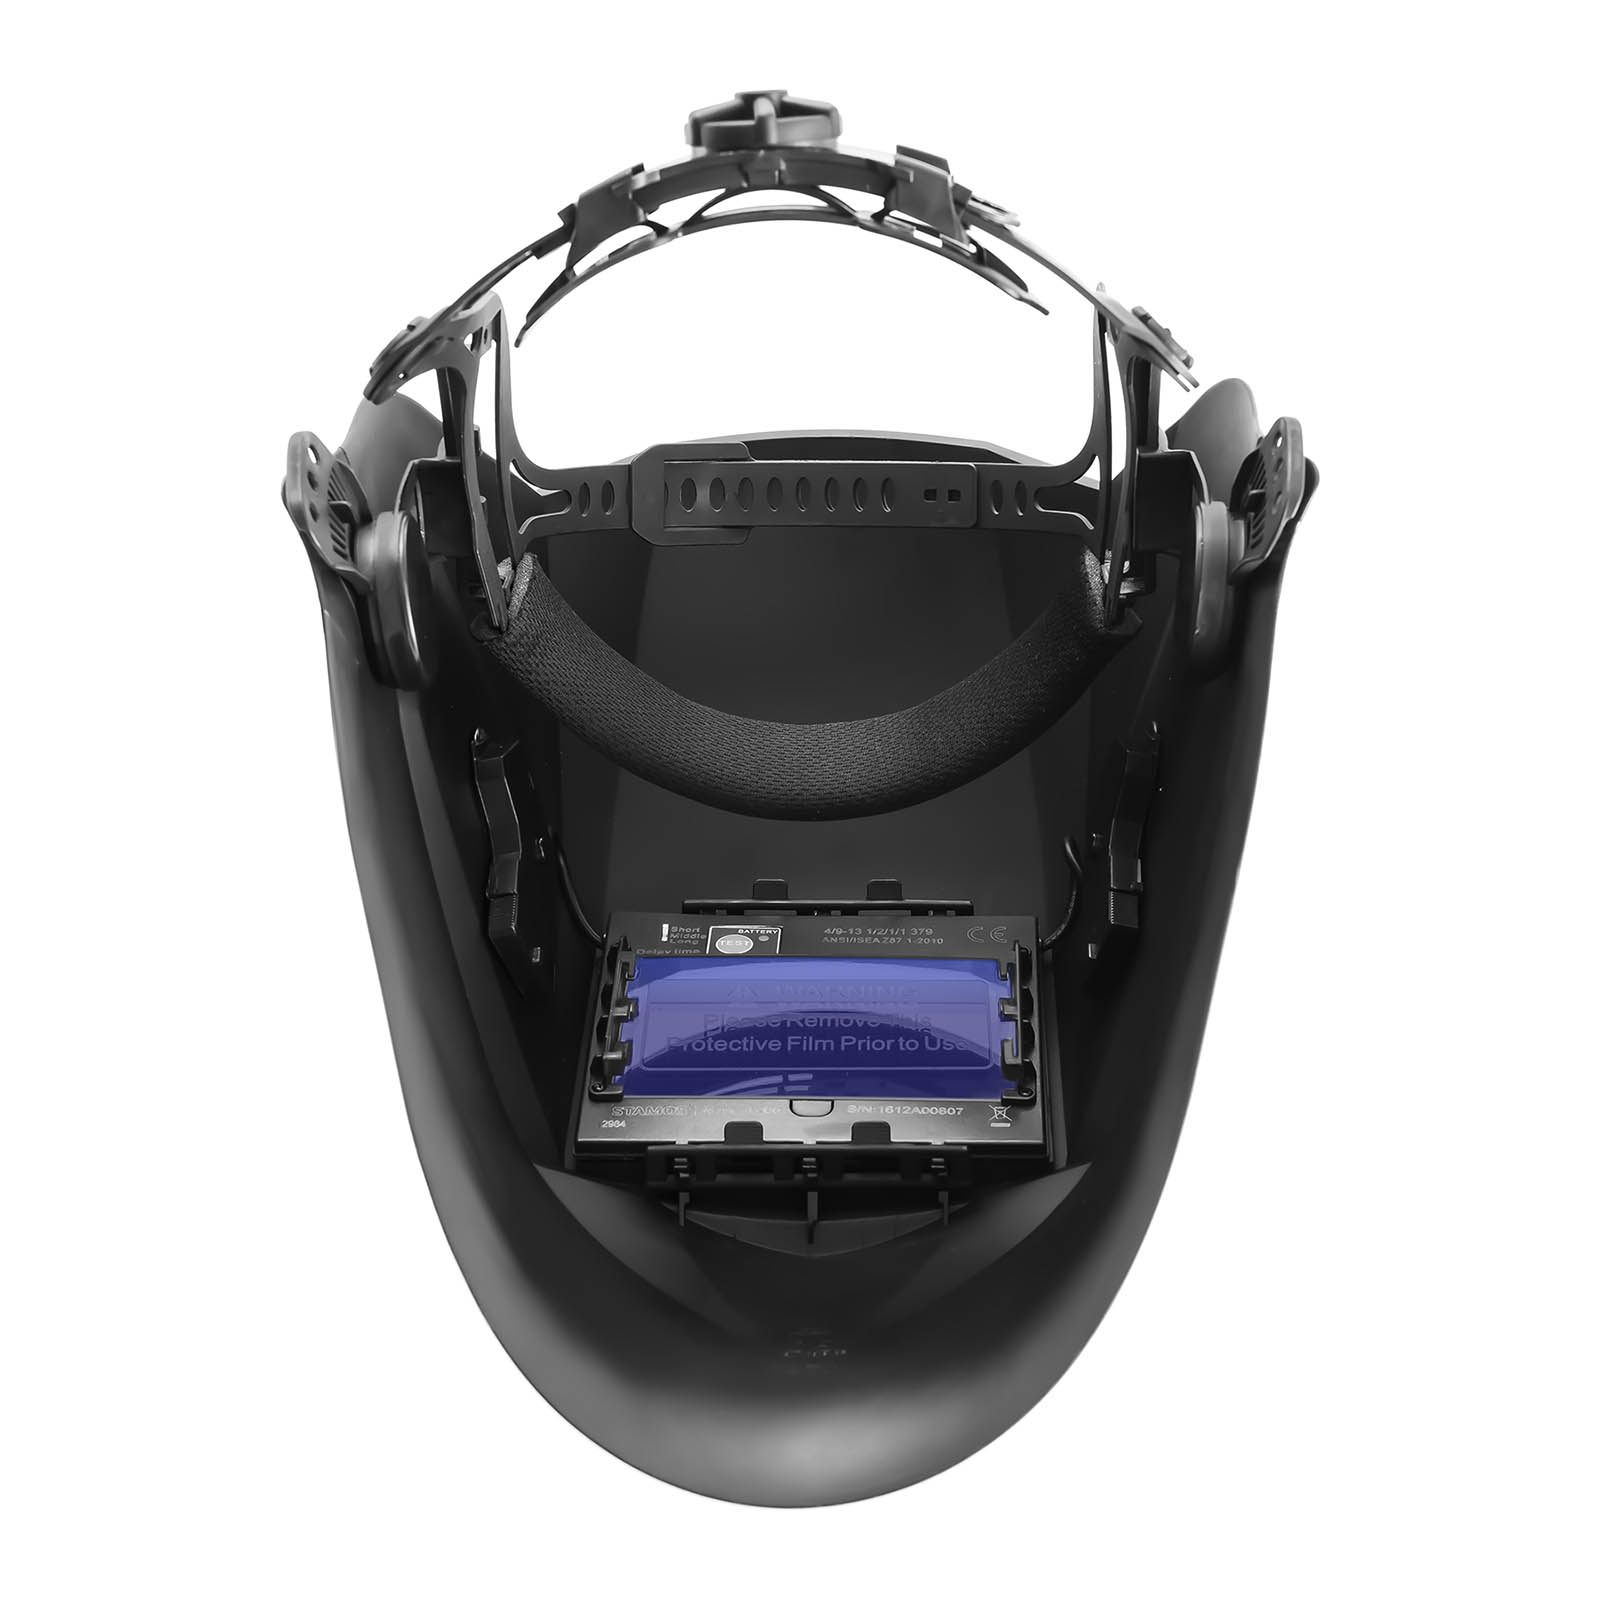 Svařovací set TIG svářečka - 250 A - 230 V - Puls + Svářecí helma - Firestarter 500 - ADVANCED SERIES